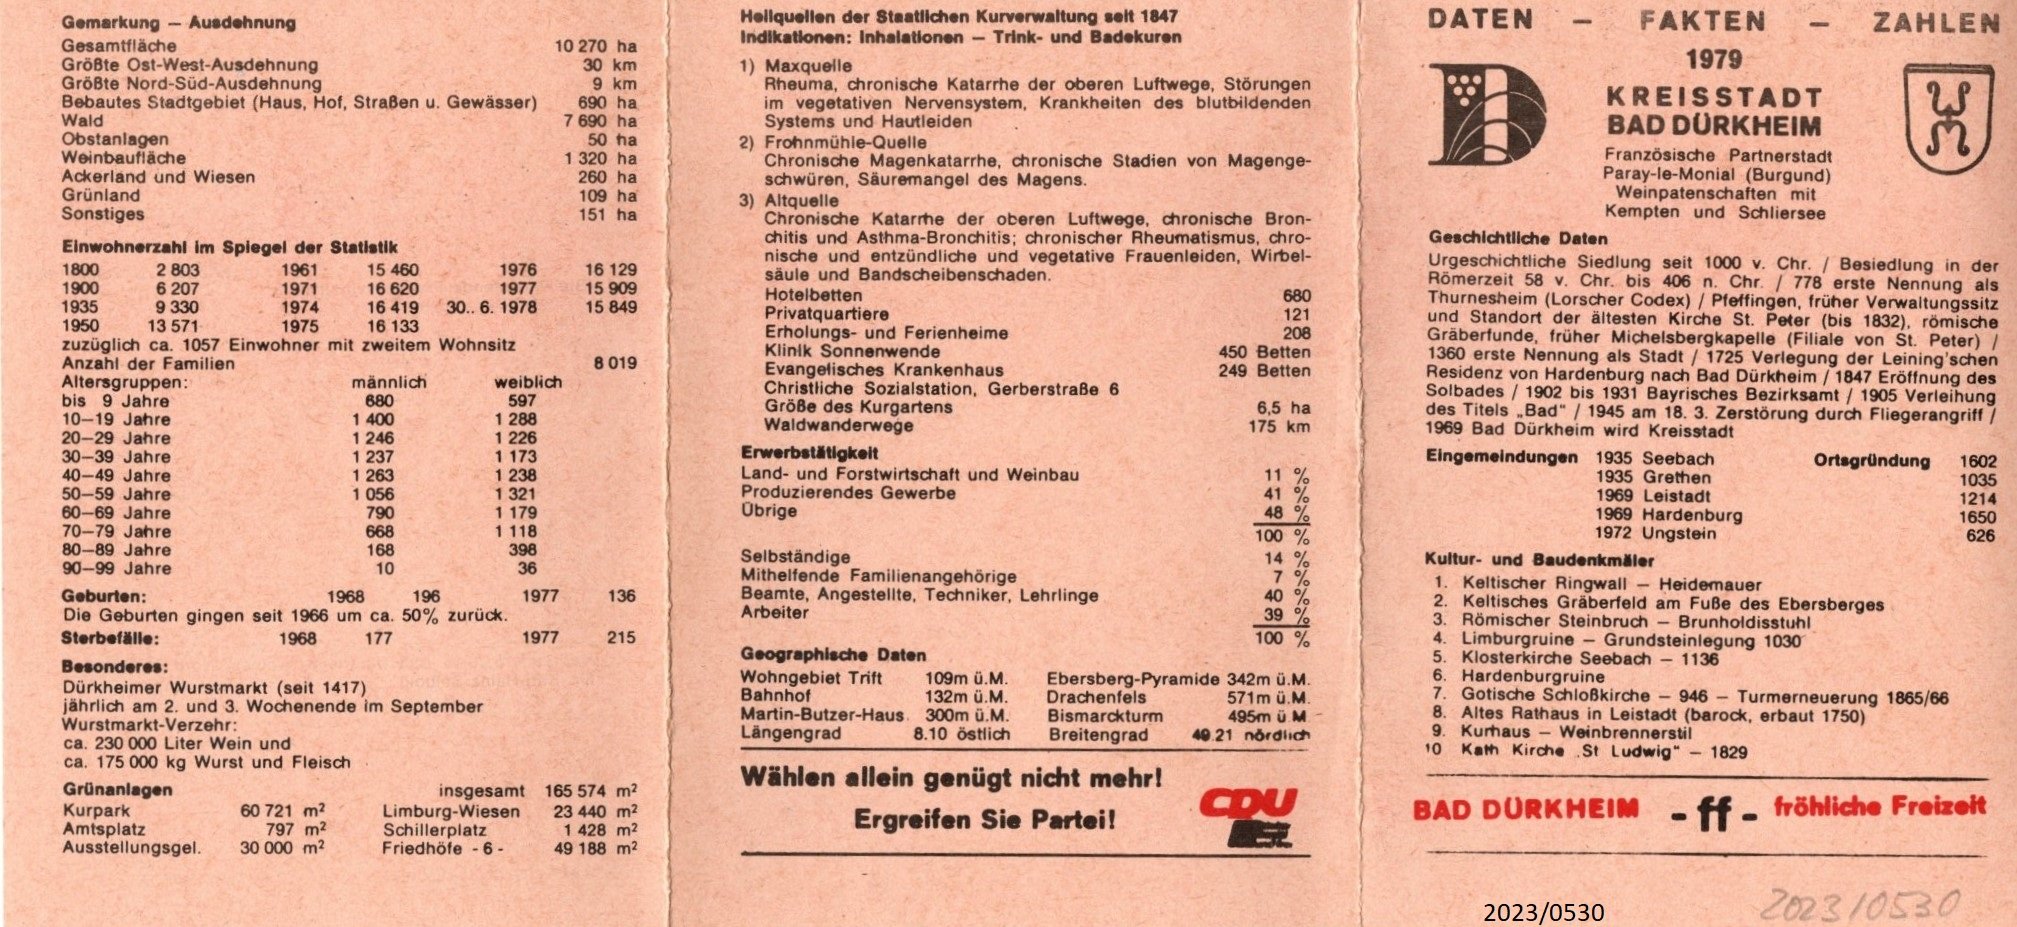 CDU- Information zur Kreisstadt Bad Dürkheim 1979 (Stadtmuseum Bad Dürkheim im Kulturzentrum Haus Catoir CC BY-NC-SA)